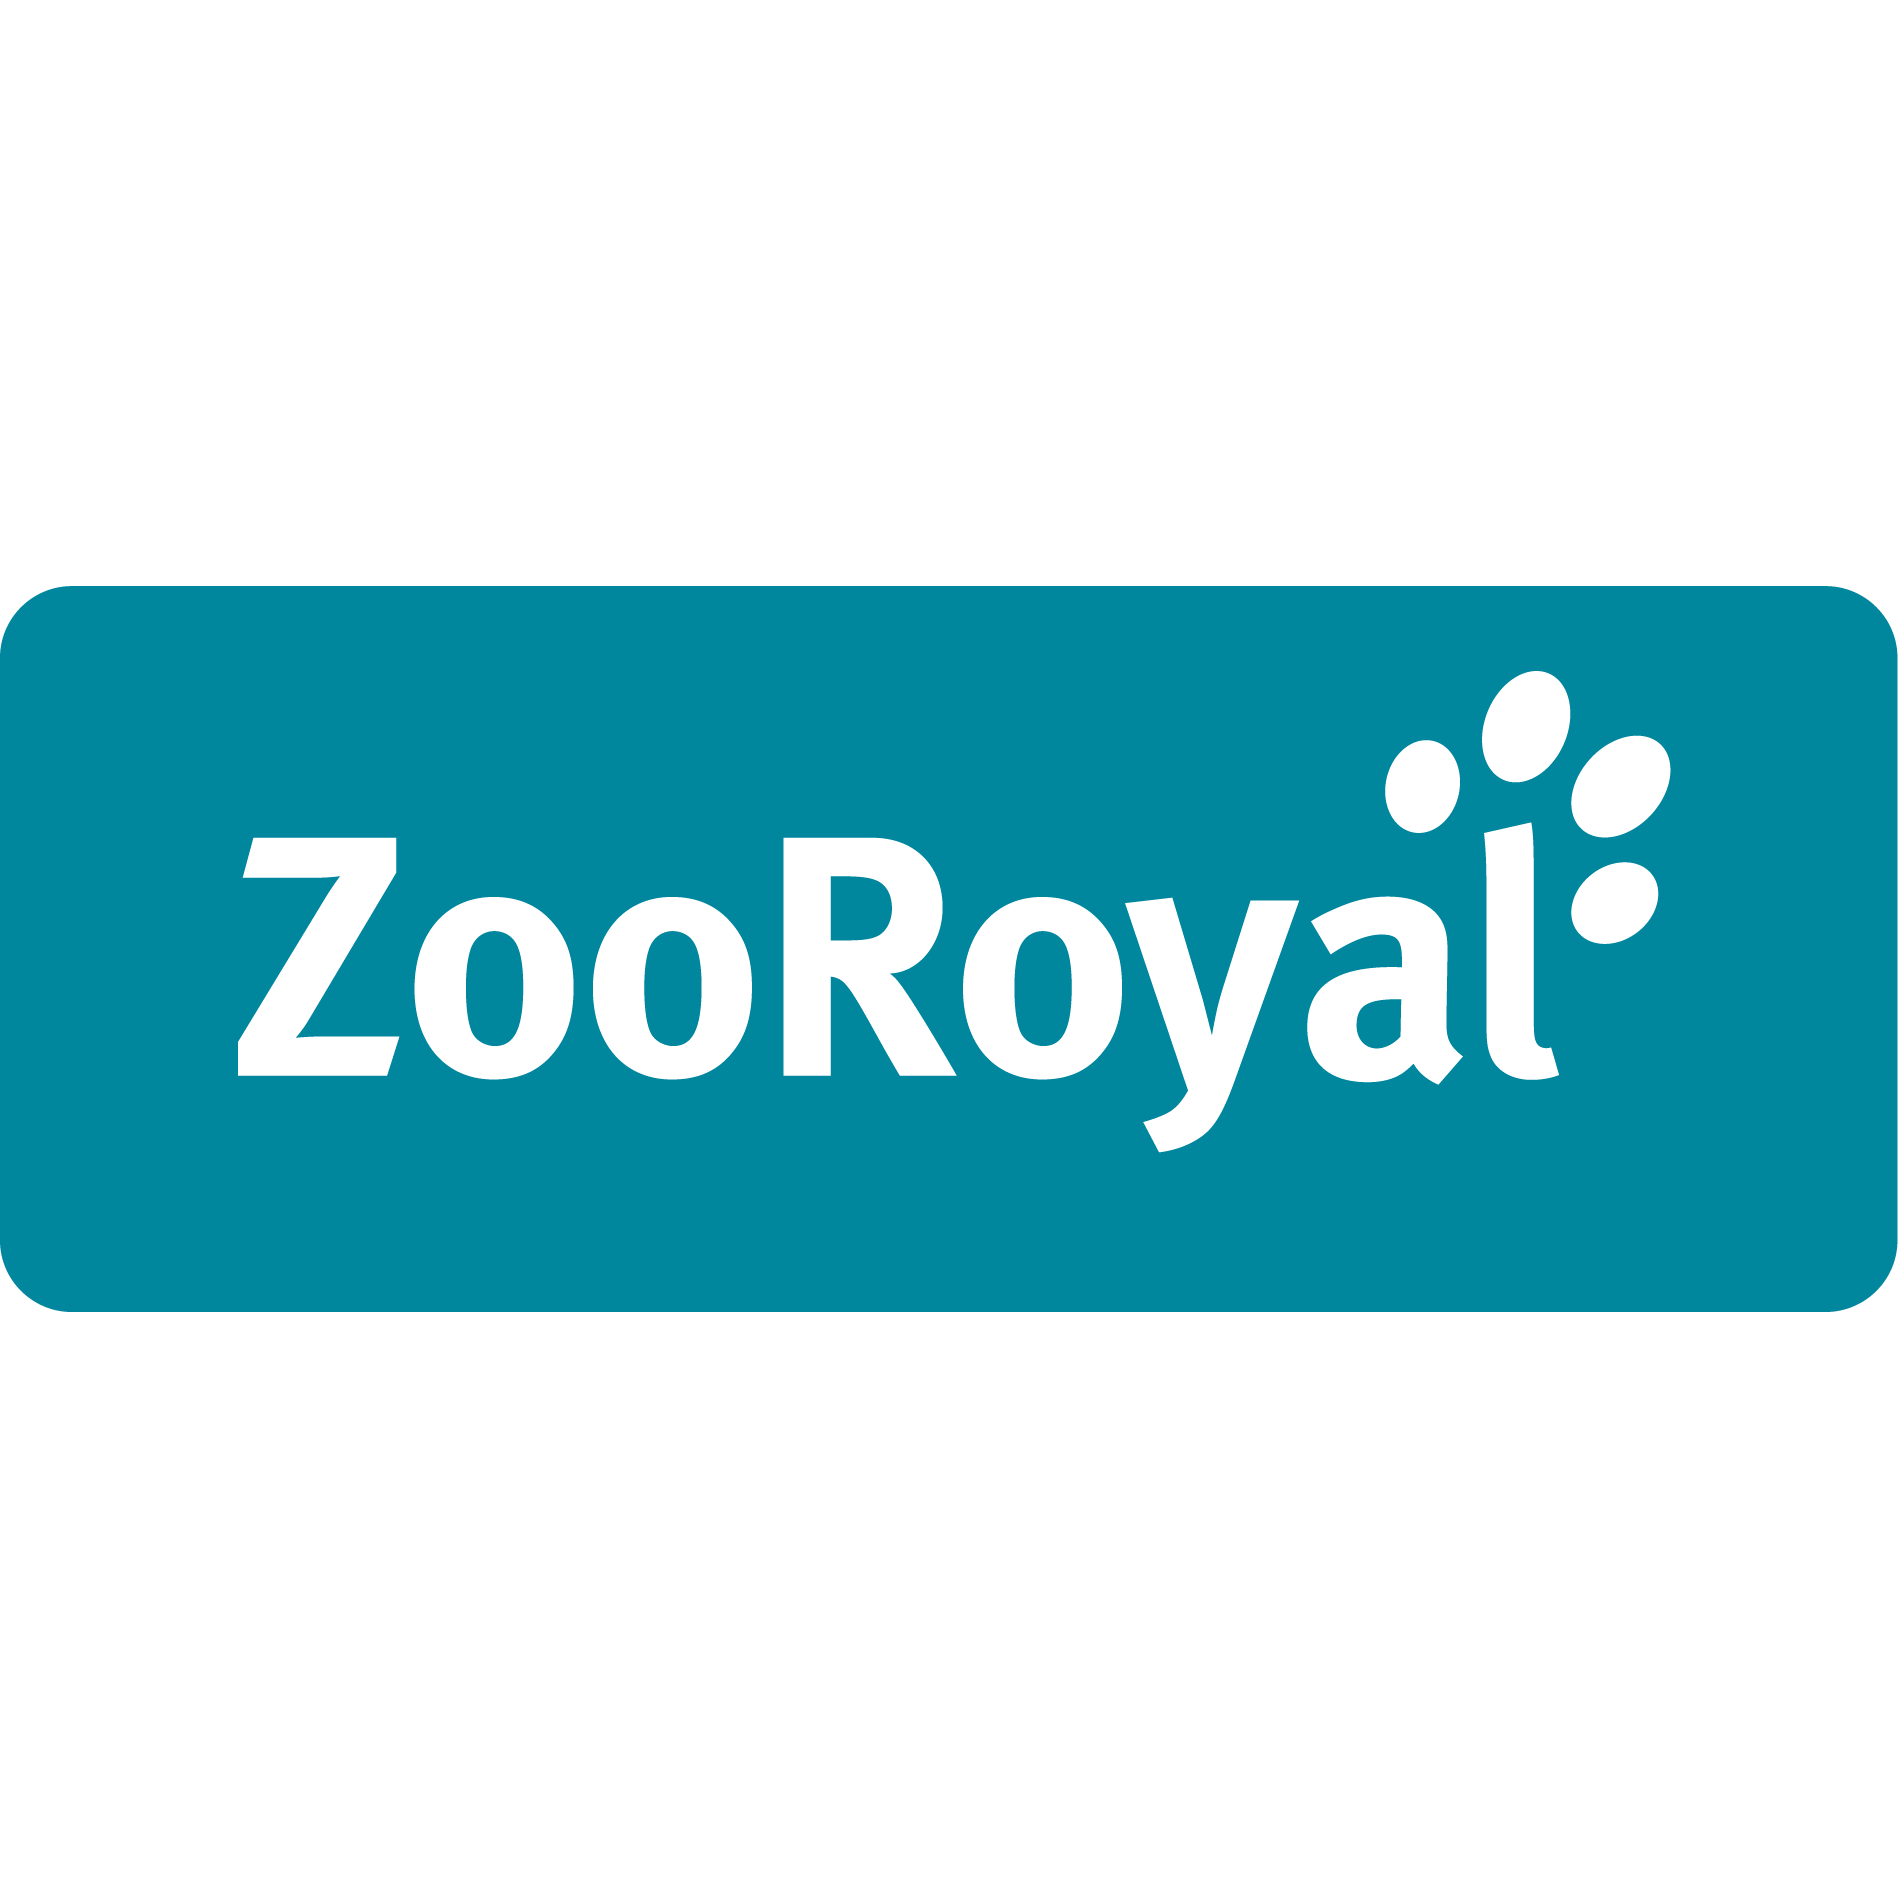 Logo ZooRoyal